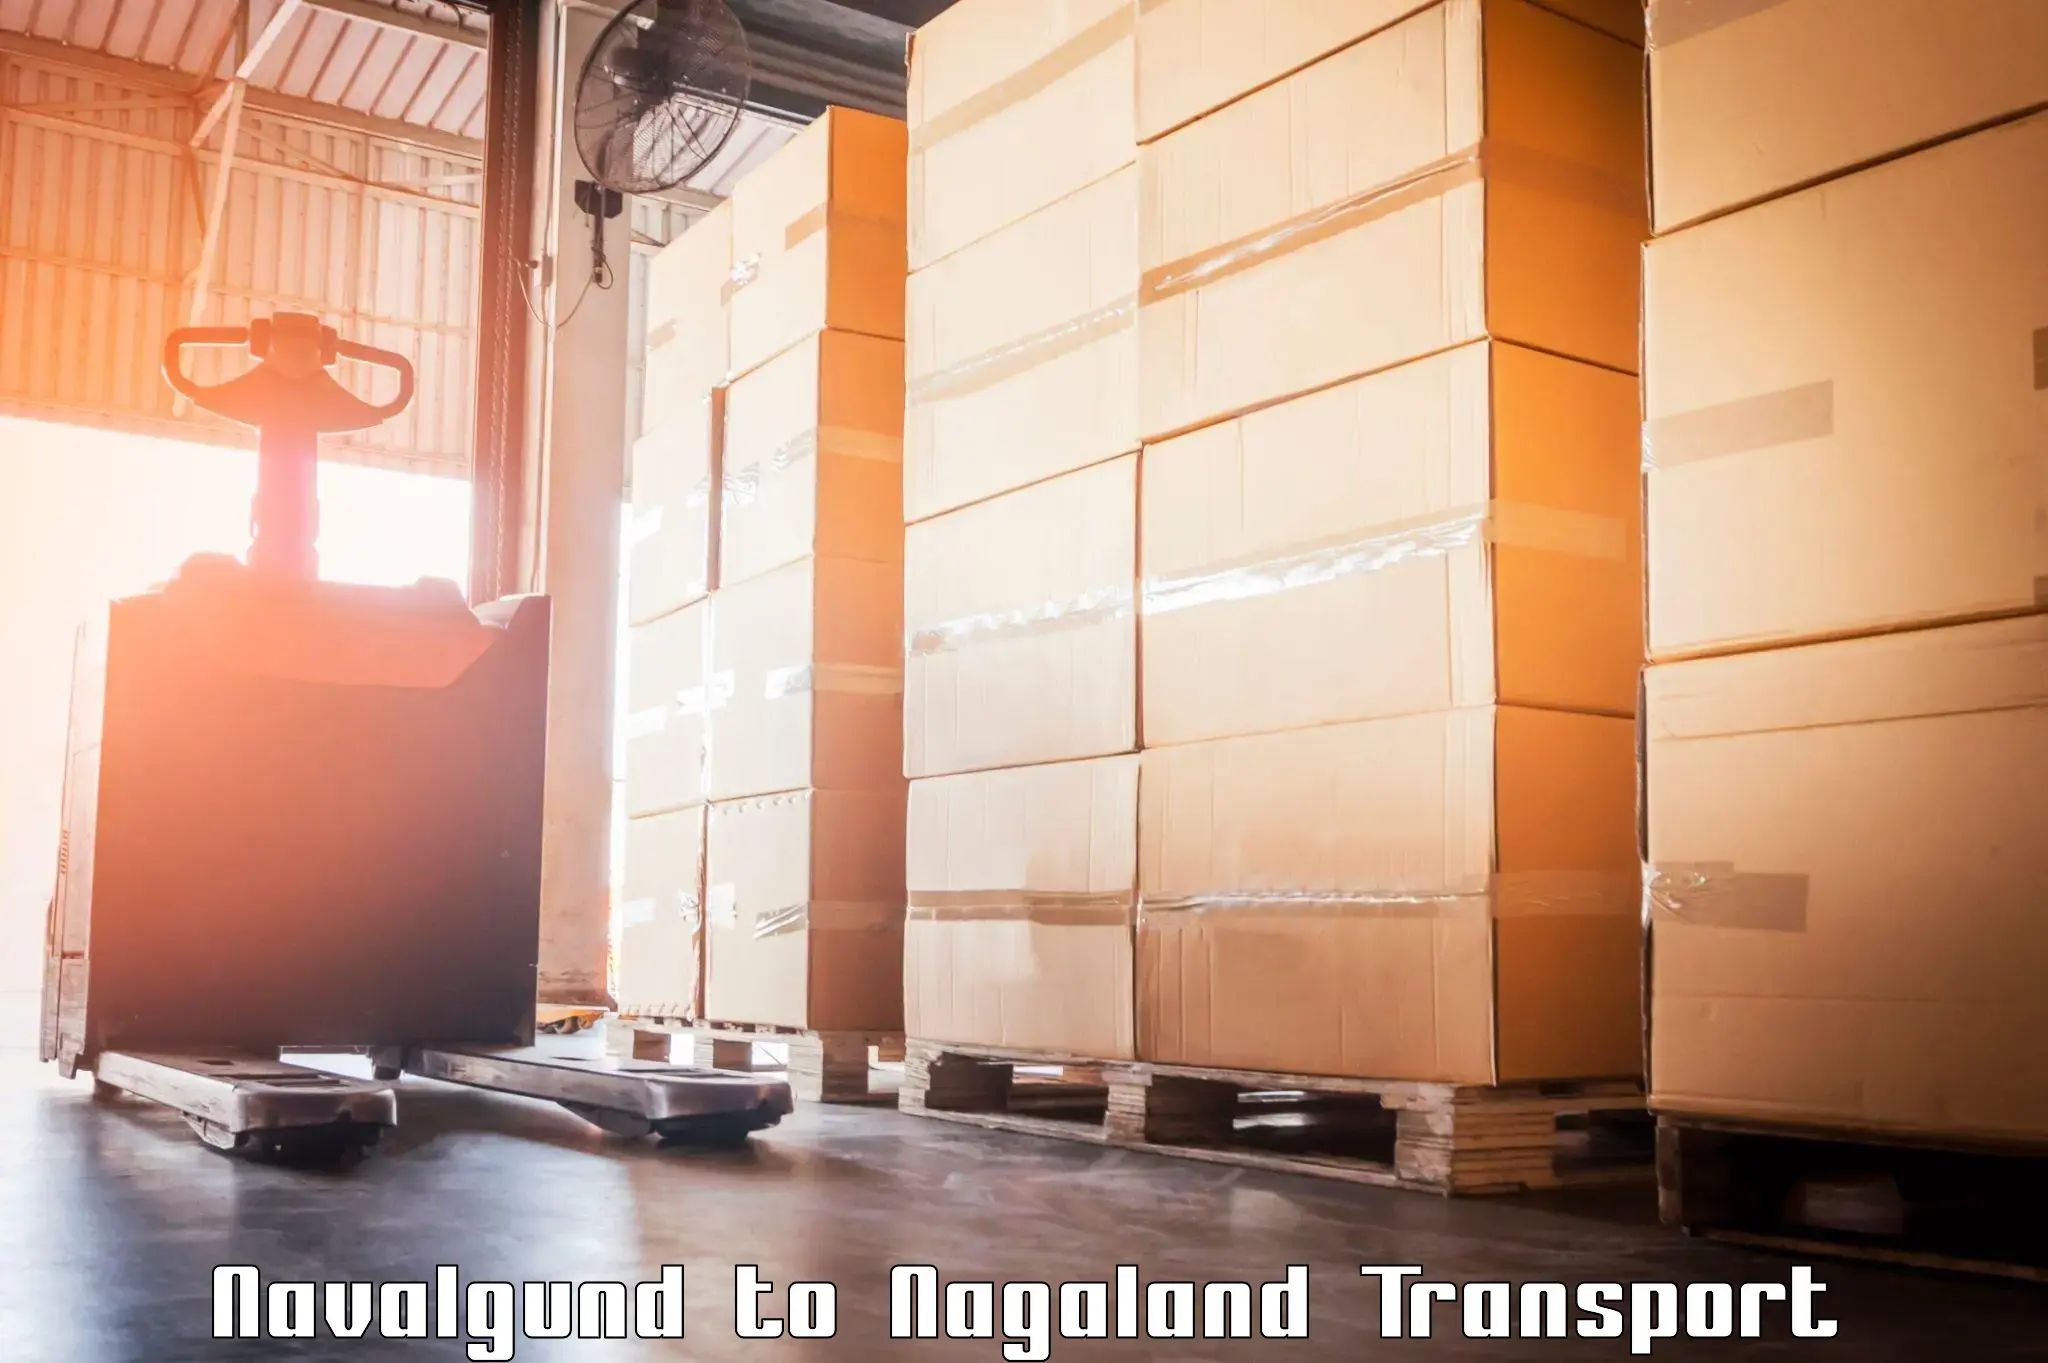 Cargo train transport services Navalgund to Nagaland